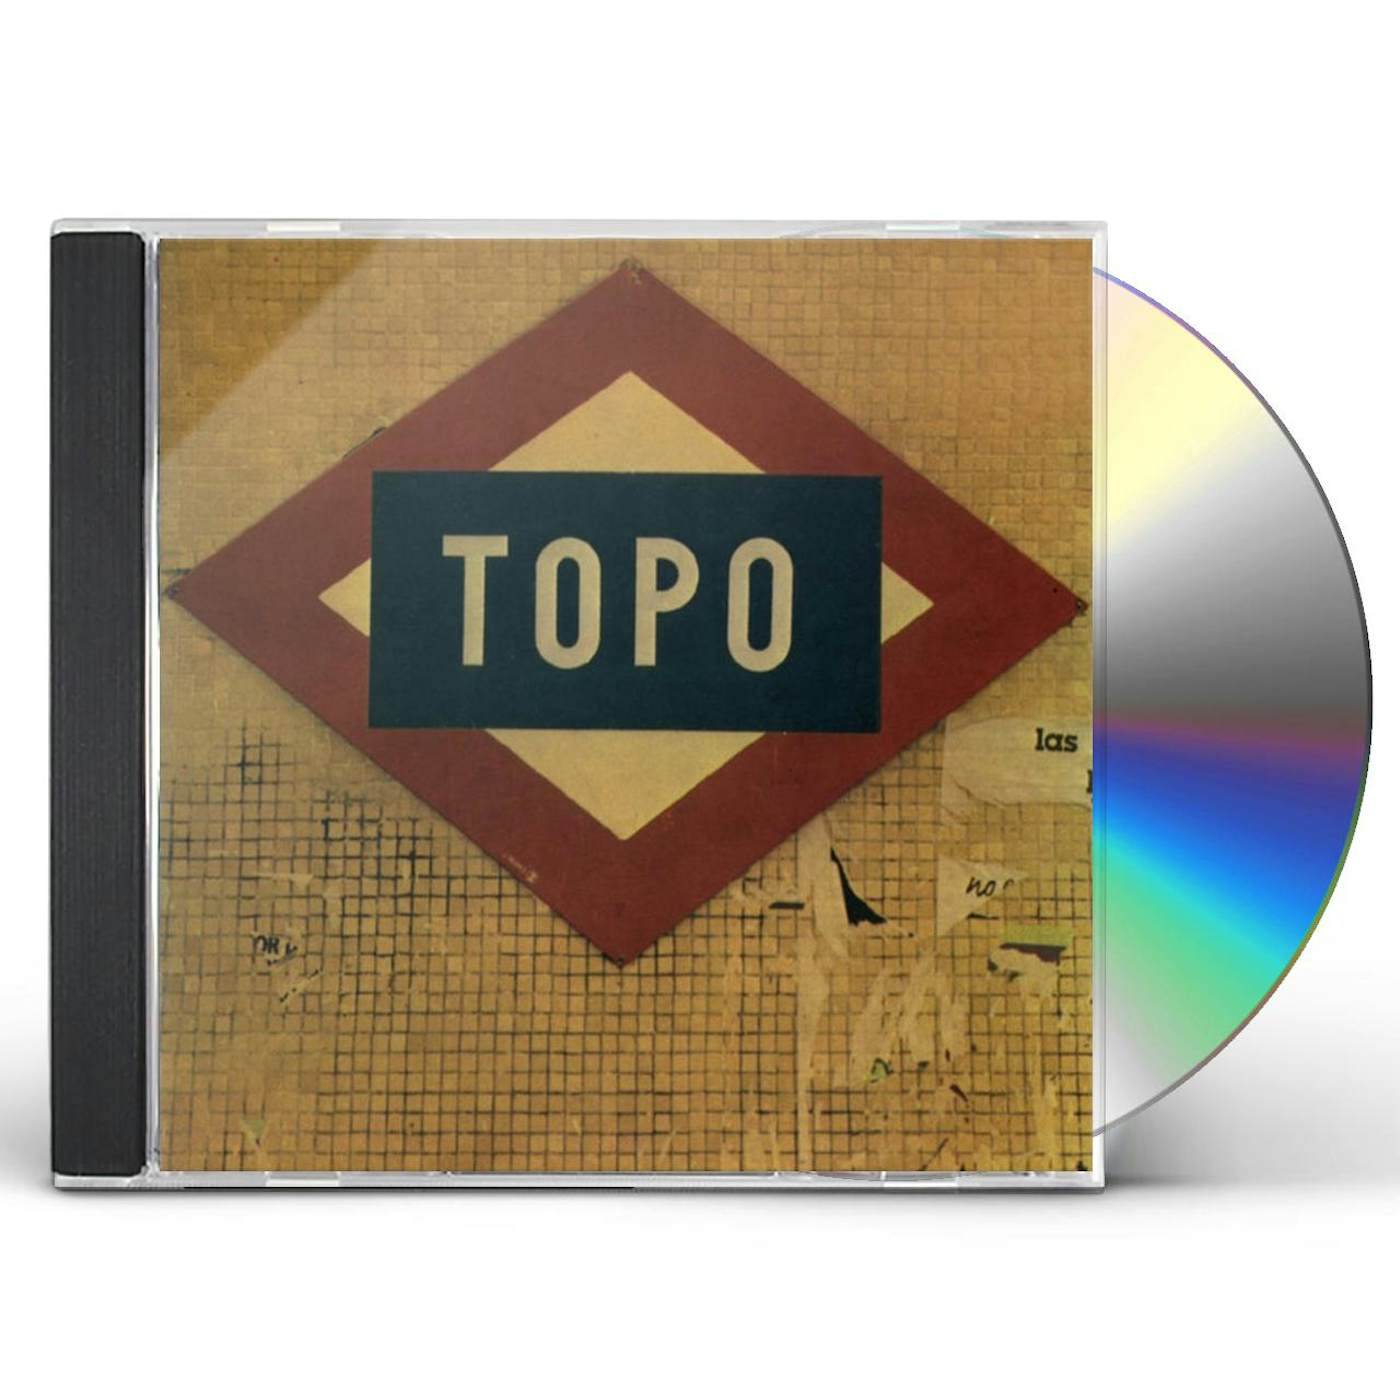 Topo VALLECAS 1996 CD